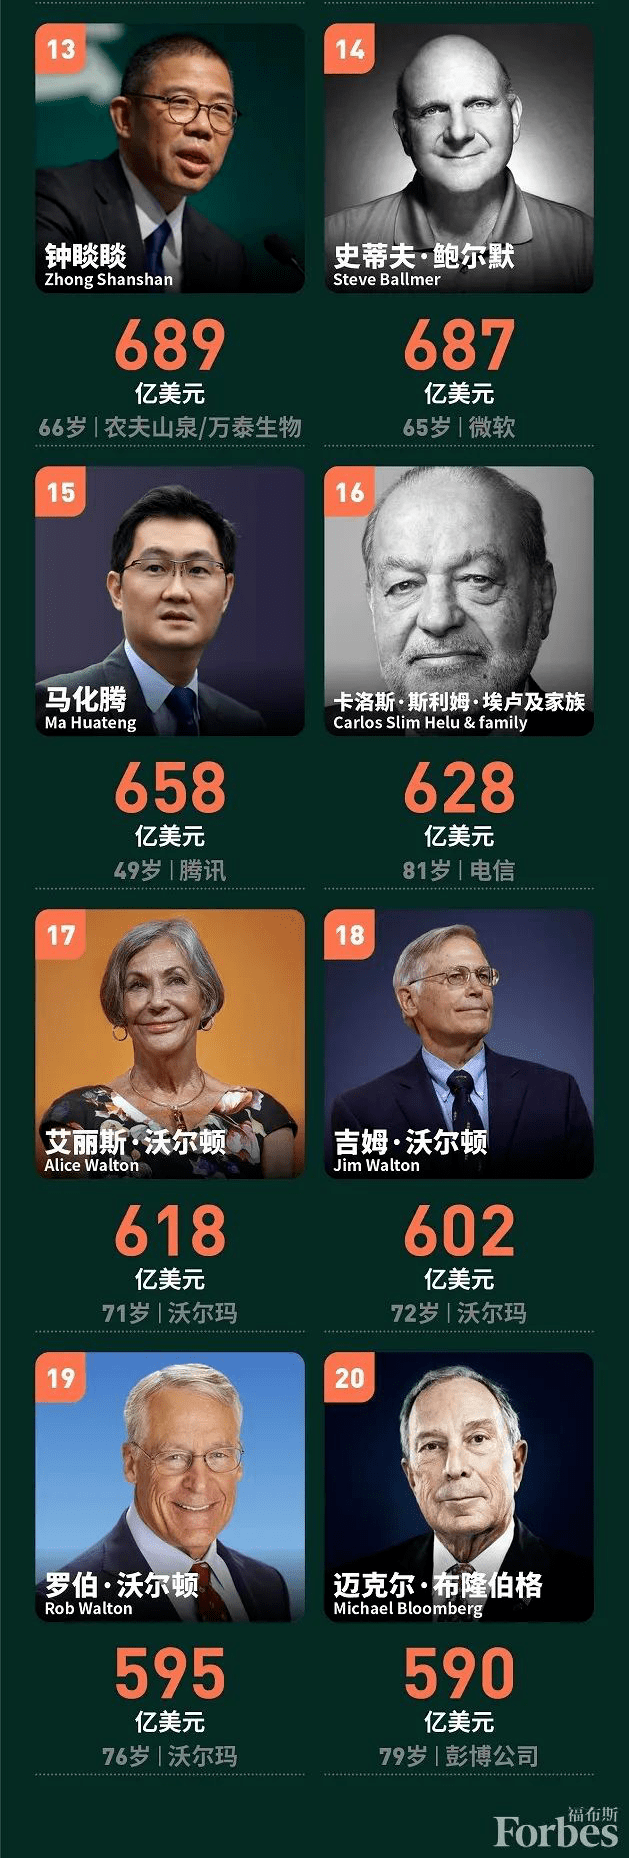 全球最有钱的20位富豪揭晓中国最有钱的是他